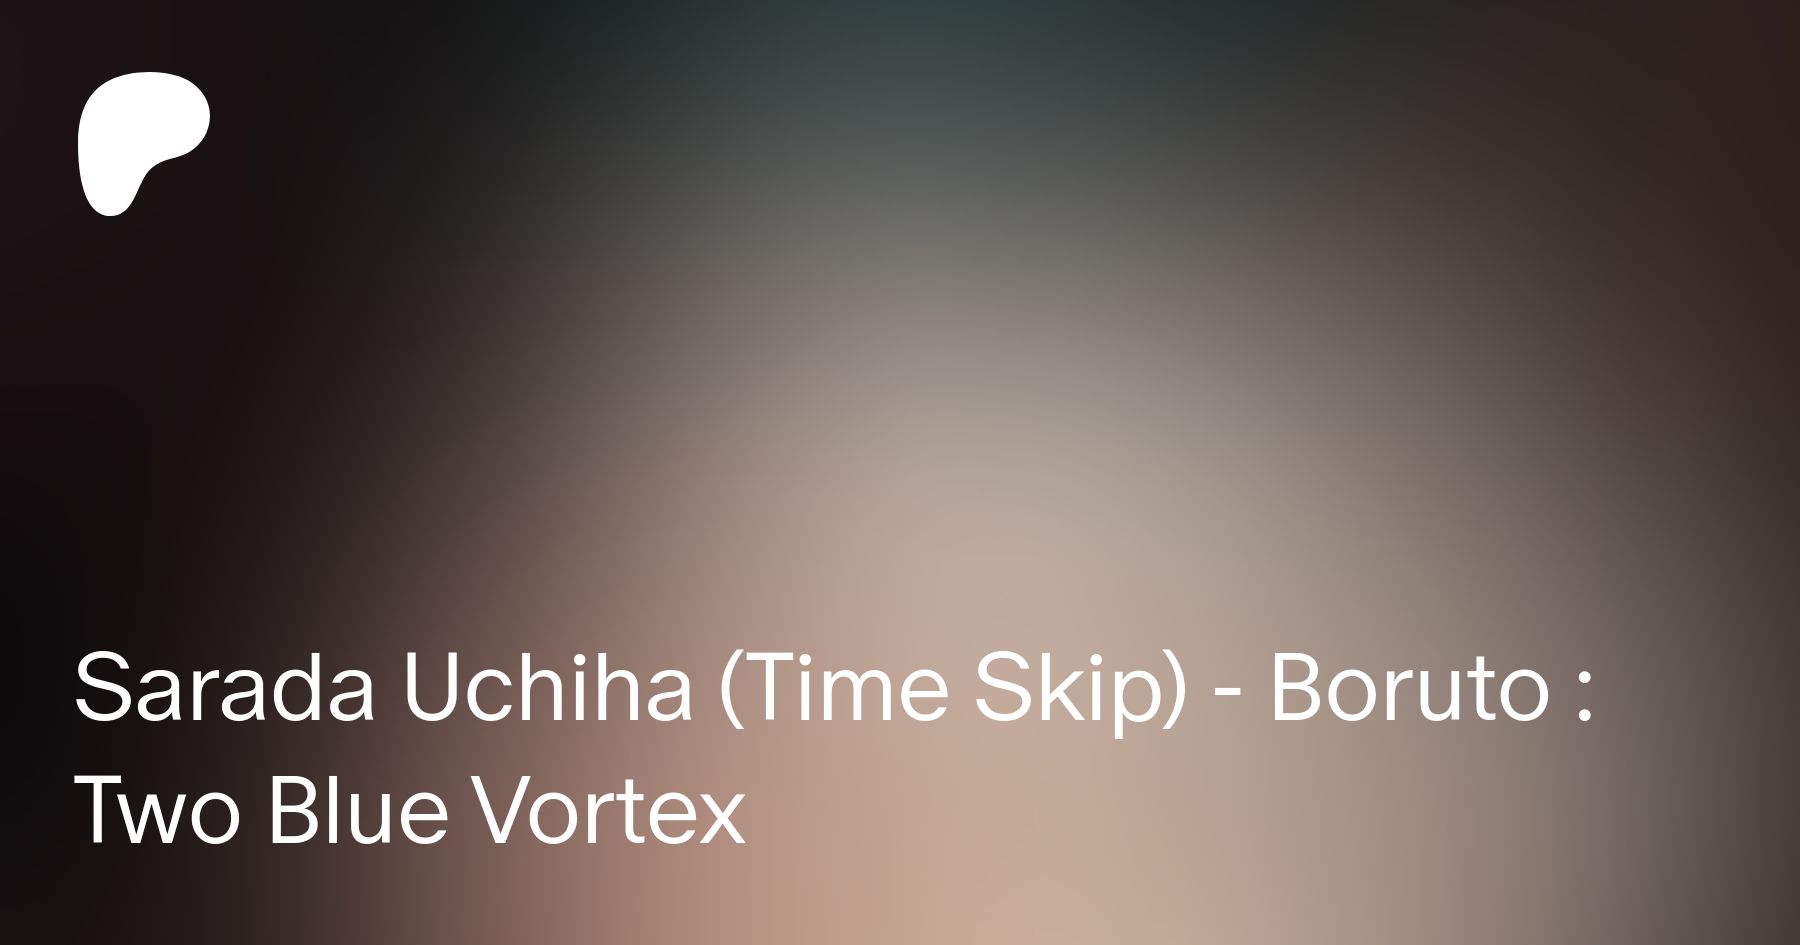 Sarada Uchiha Time Skip, Boruto: Two Blue Vortex - v2.0